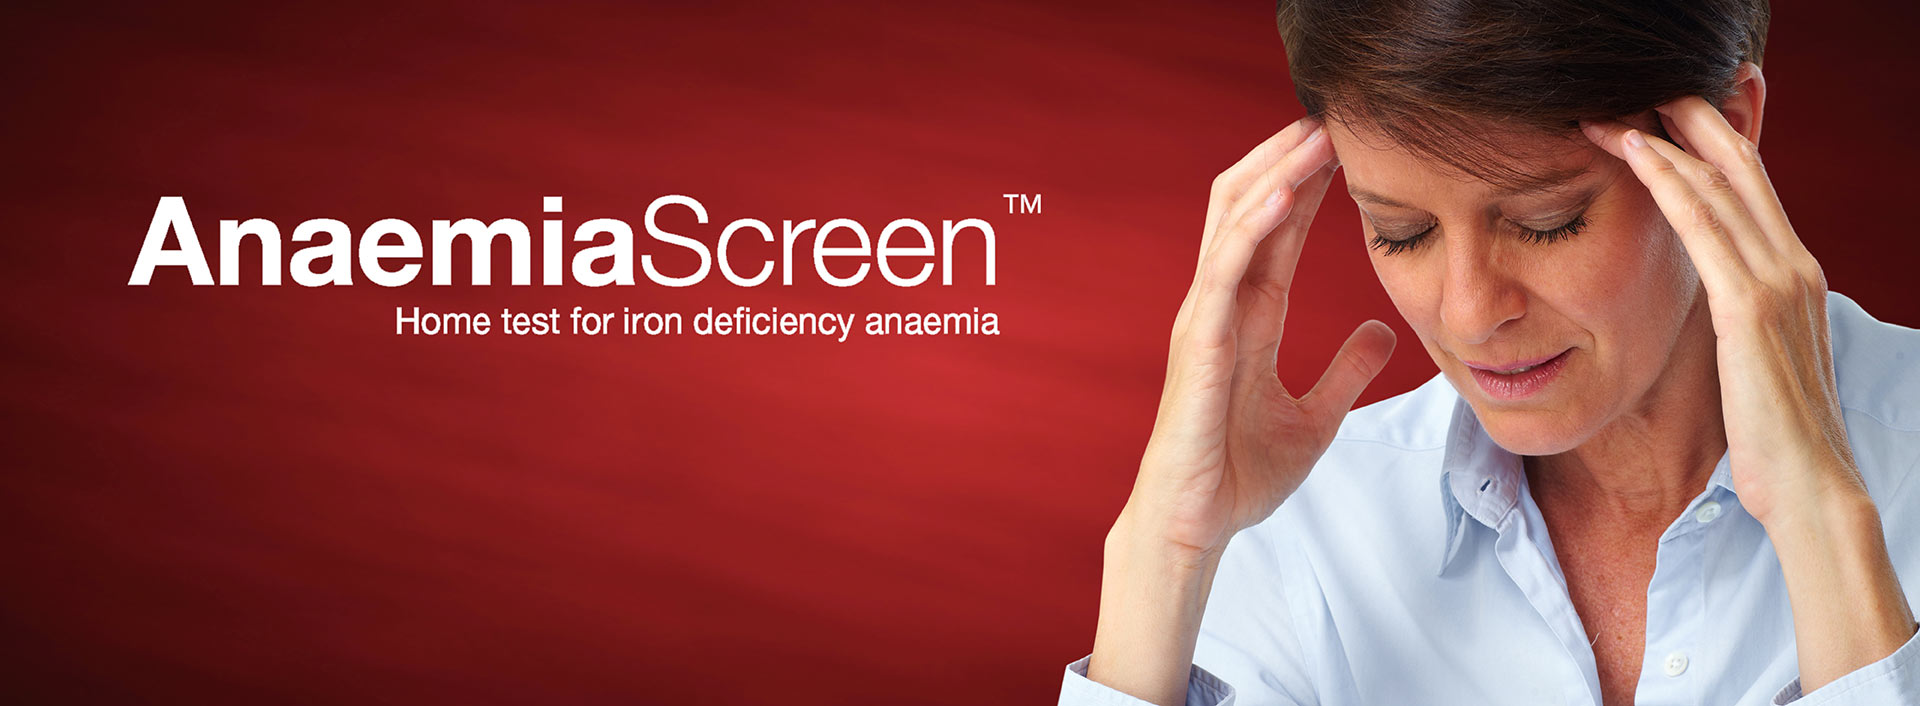 AnaemiaScreen